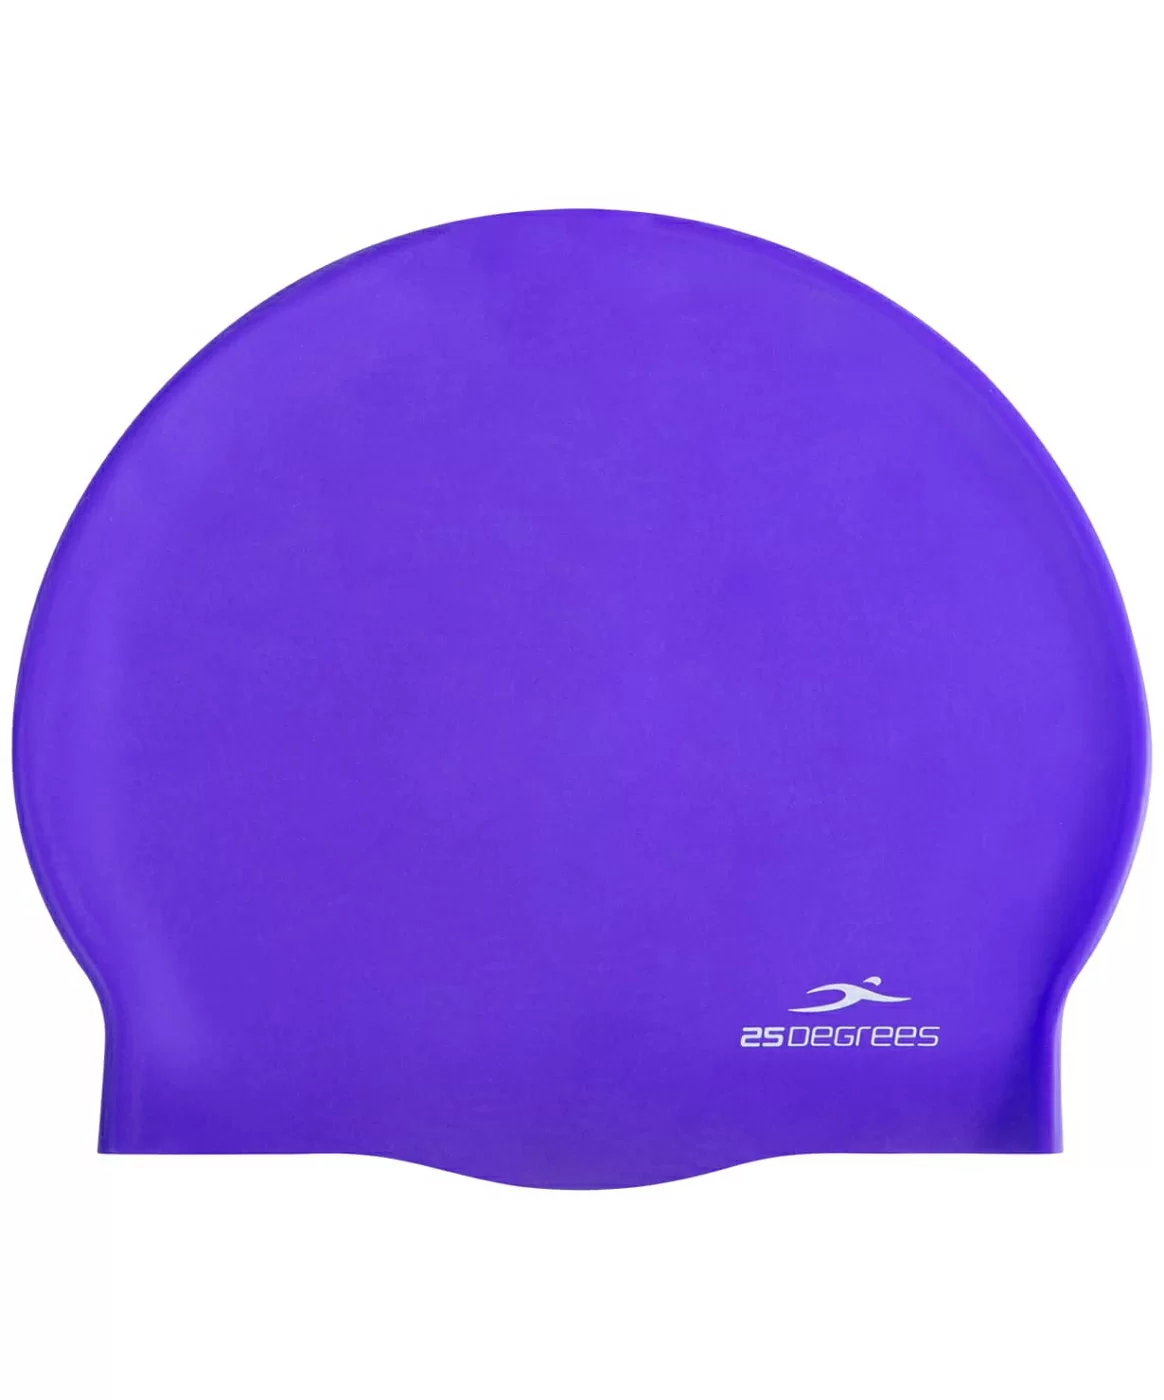 Реальное фото Шапочка для плавания 25DEGREES Nuance 25D21004A силикон пурпурный 19519 от магазина СпортЕВ